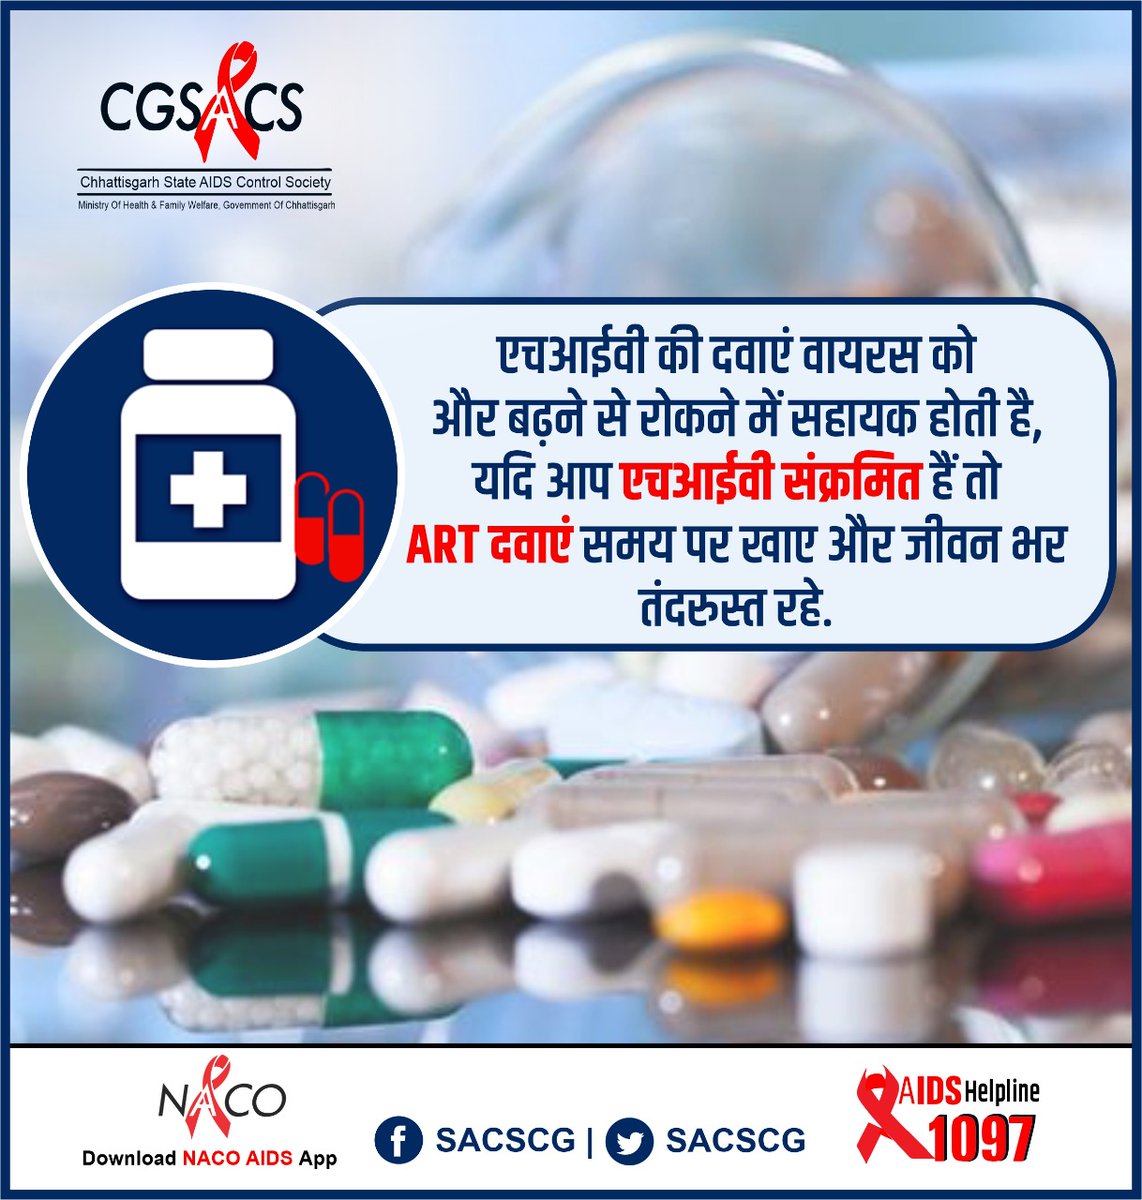 HIV की दवाओं के रोजाना सेवन से आप एचआईवी वायरस को और बढ़ने से रोक सकते हैं.अपने चिकित्सक के परामर्श अनुसार दवाओं का सेवन जारी रखें..

#antiretroviraltherapy #dial1097 #HIV 
@TS_SinghDeo @drharshvardhan 
@MPSACS @GujaratSacs @JharkhandAids @UPSACS @meghalayasacs @goasacs @hpsacs